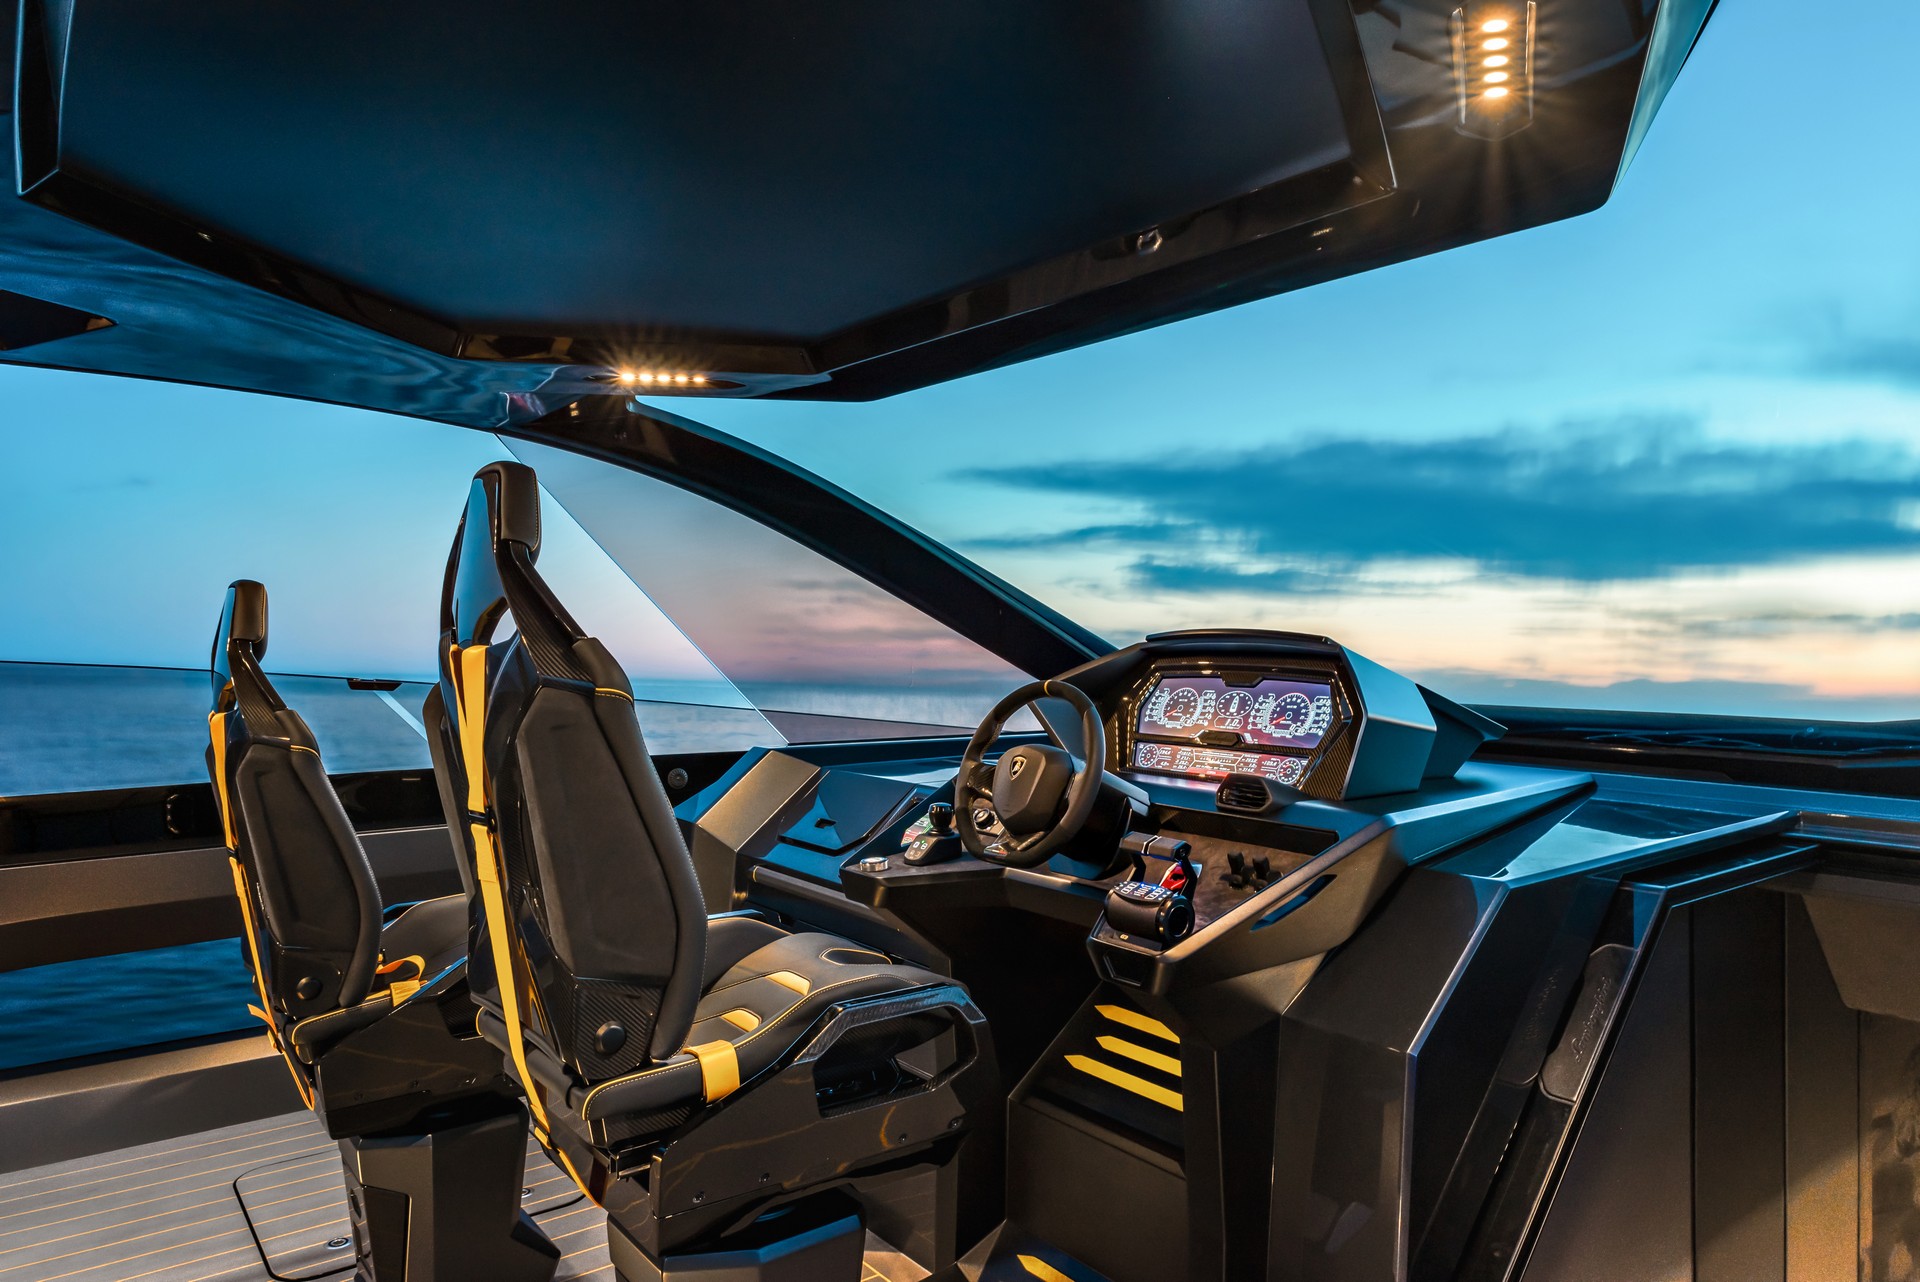 Sau thời gian dài chờ mòn mỏi, Conor McGregor sắp được nhận siêu du thuyền Lamborghini Tecnomar giá hơn 3,5 triệu USD - Ảnh 5.